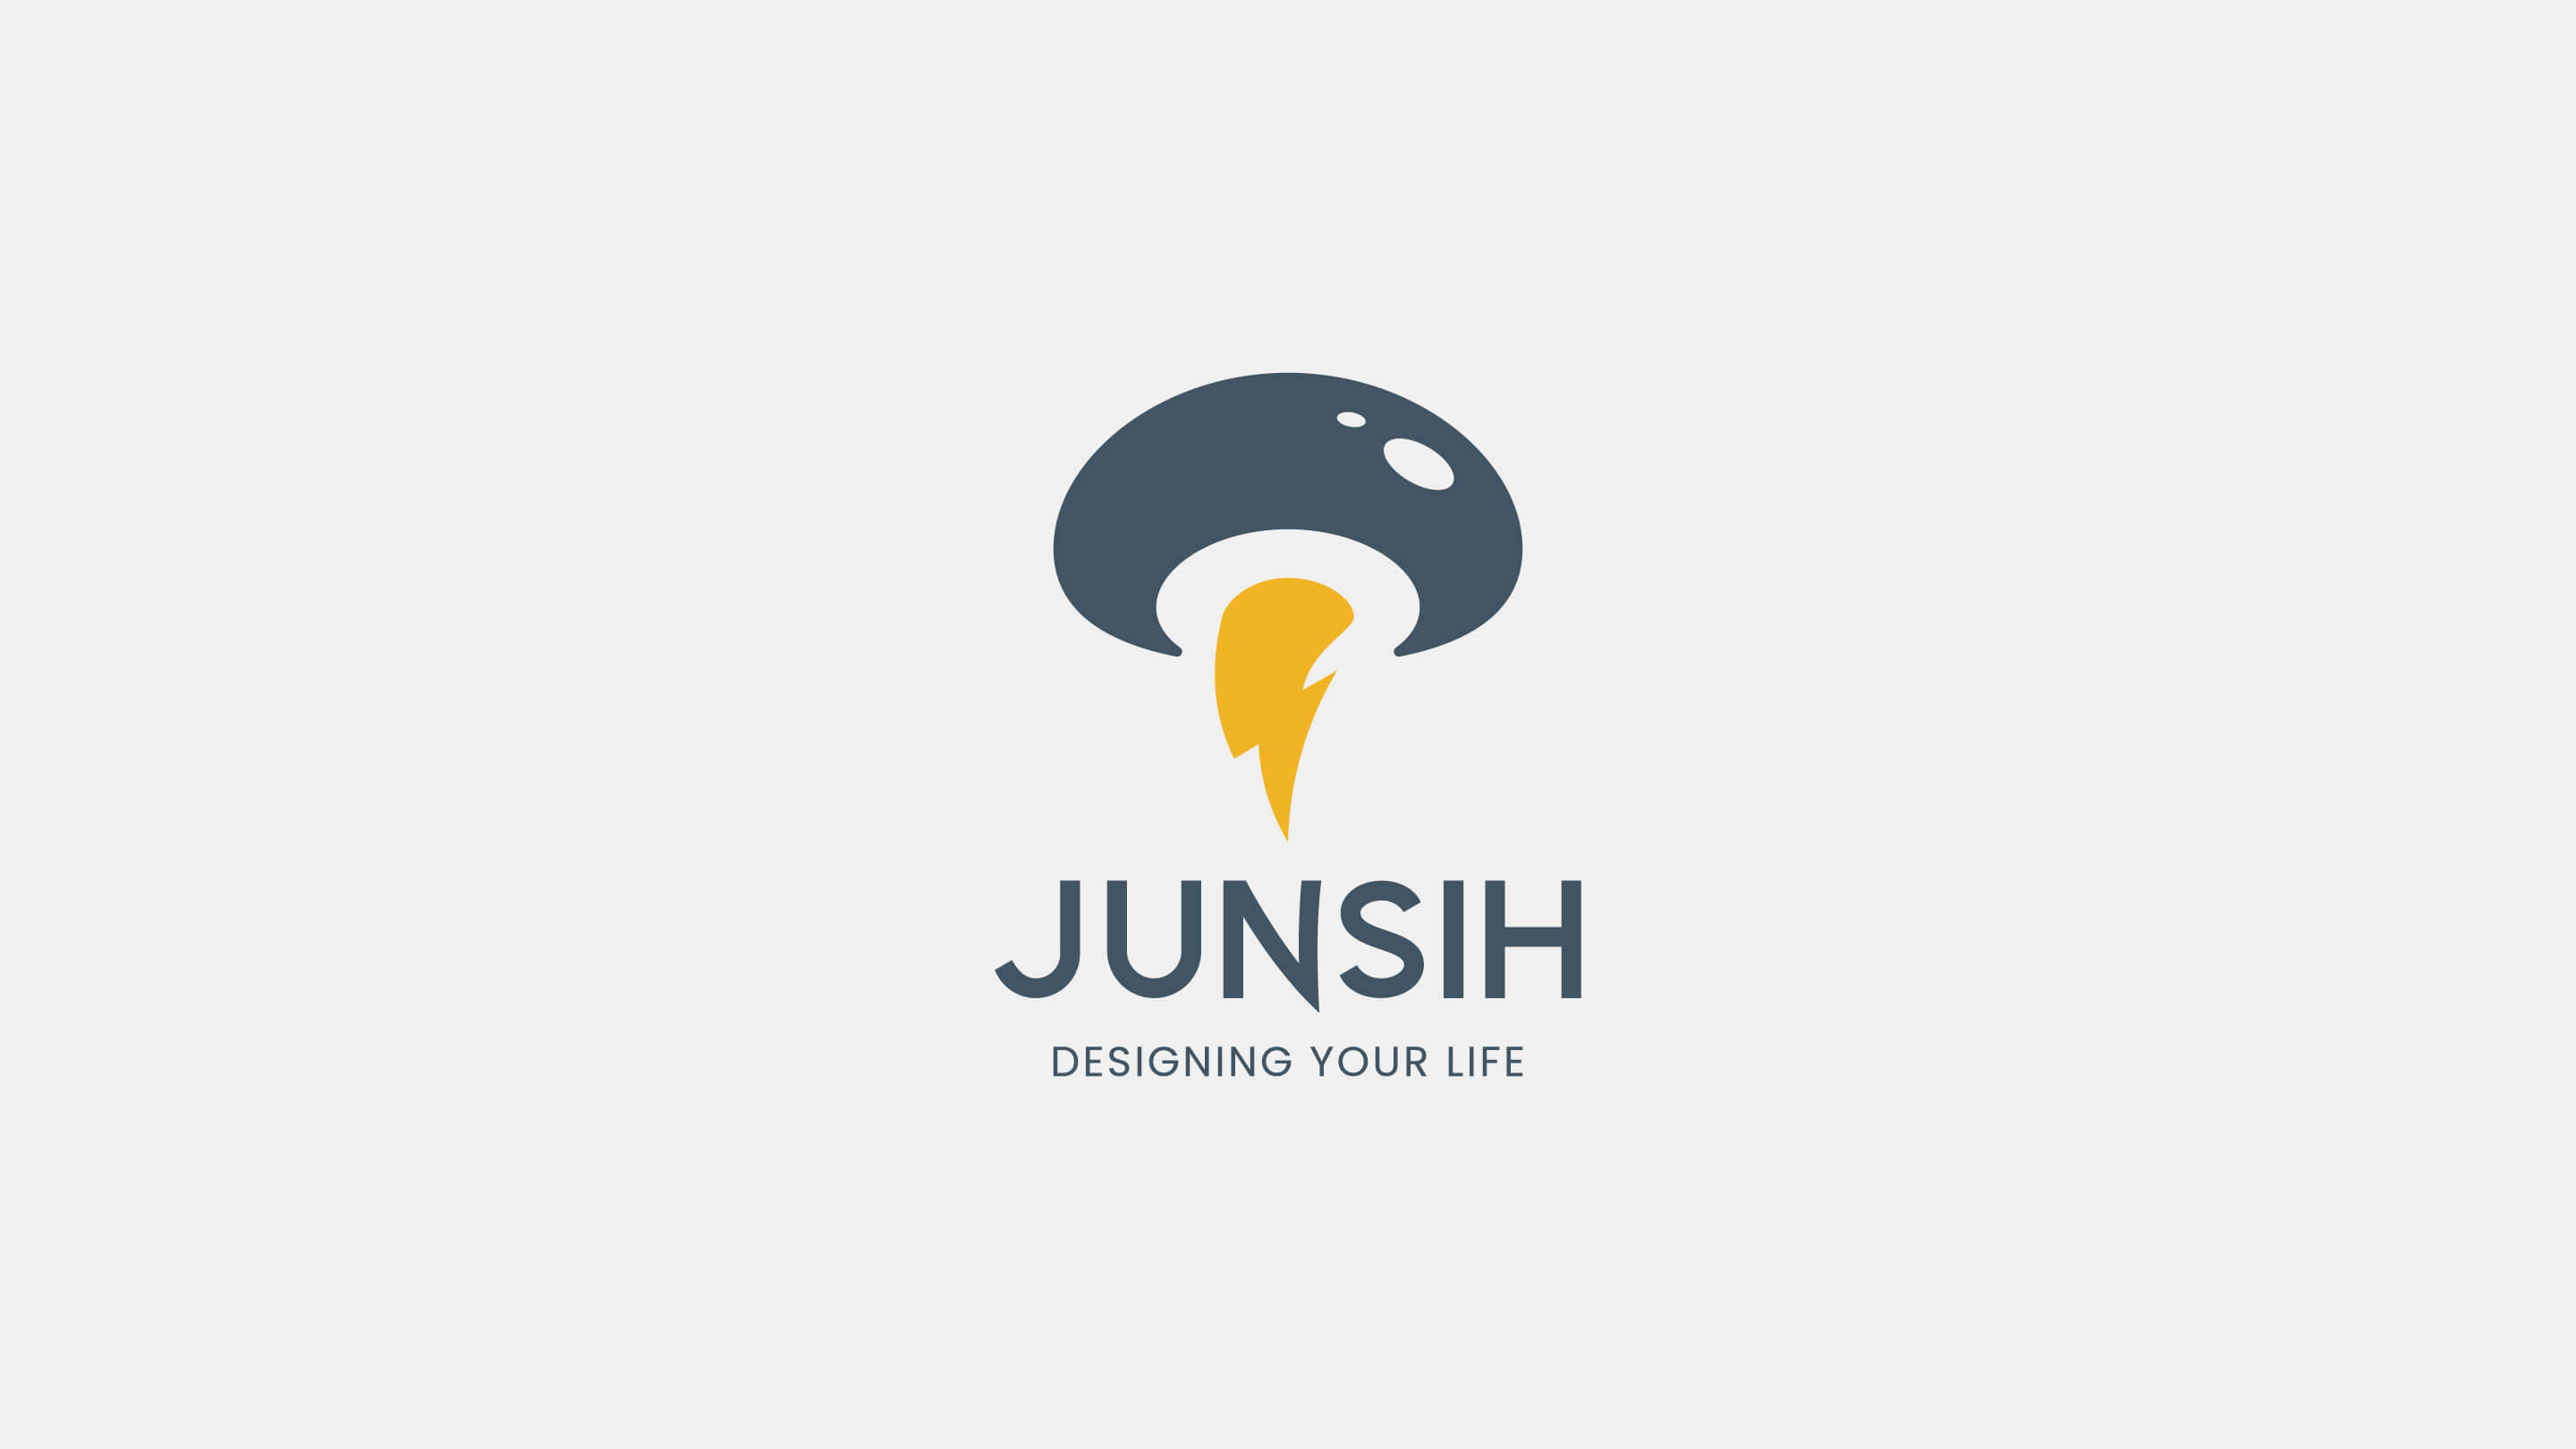 JUNSIH 品牌識別設計